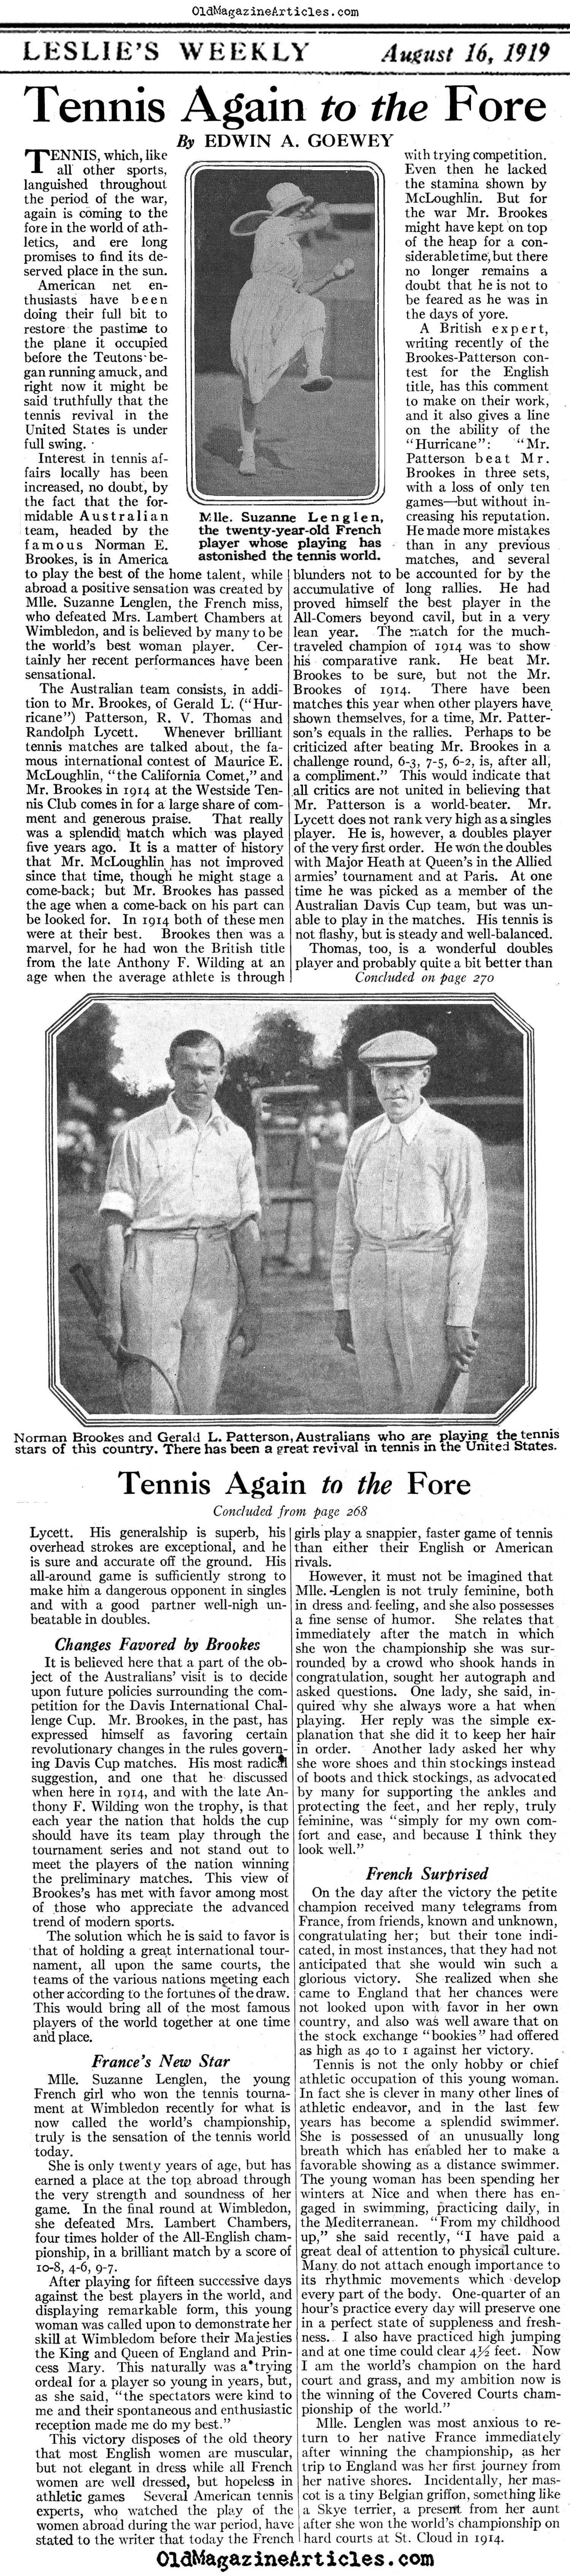 Tennis, 1919 (Leslie's Weekly, 1919)